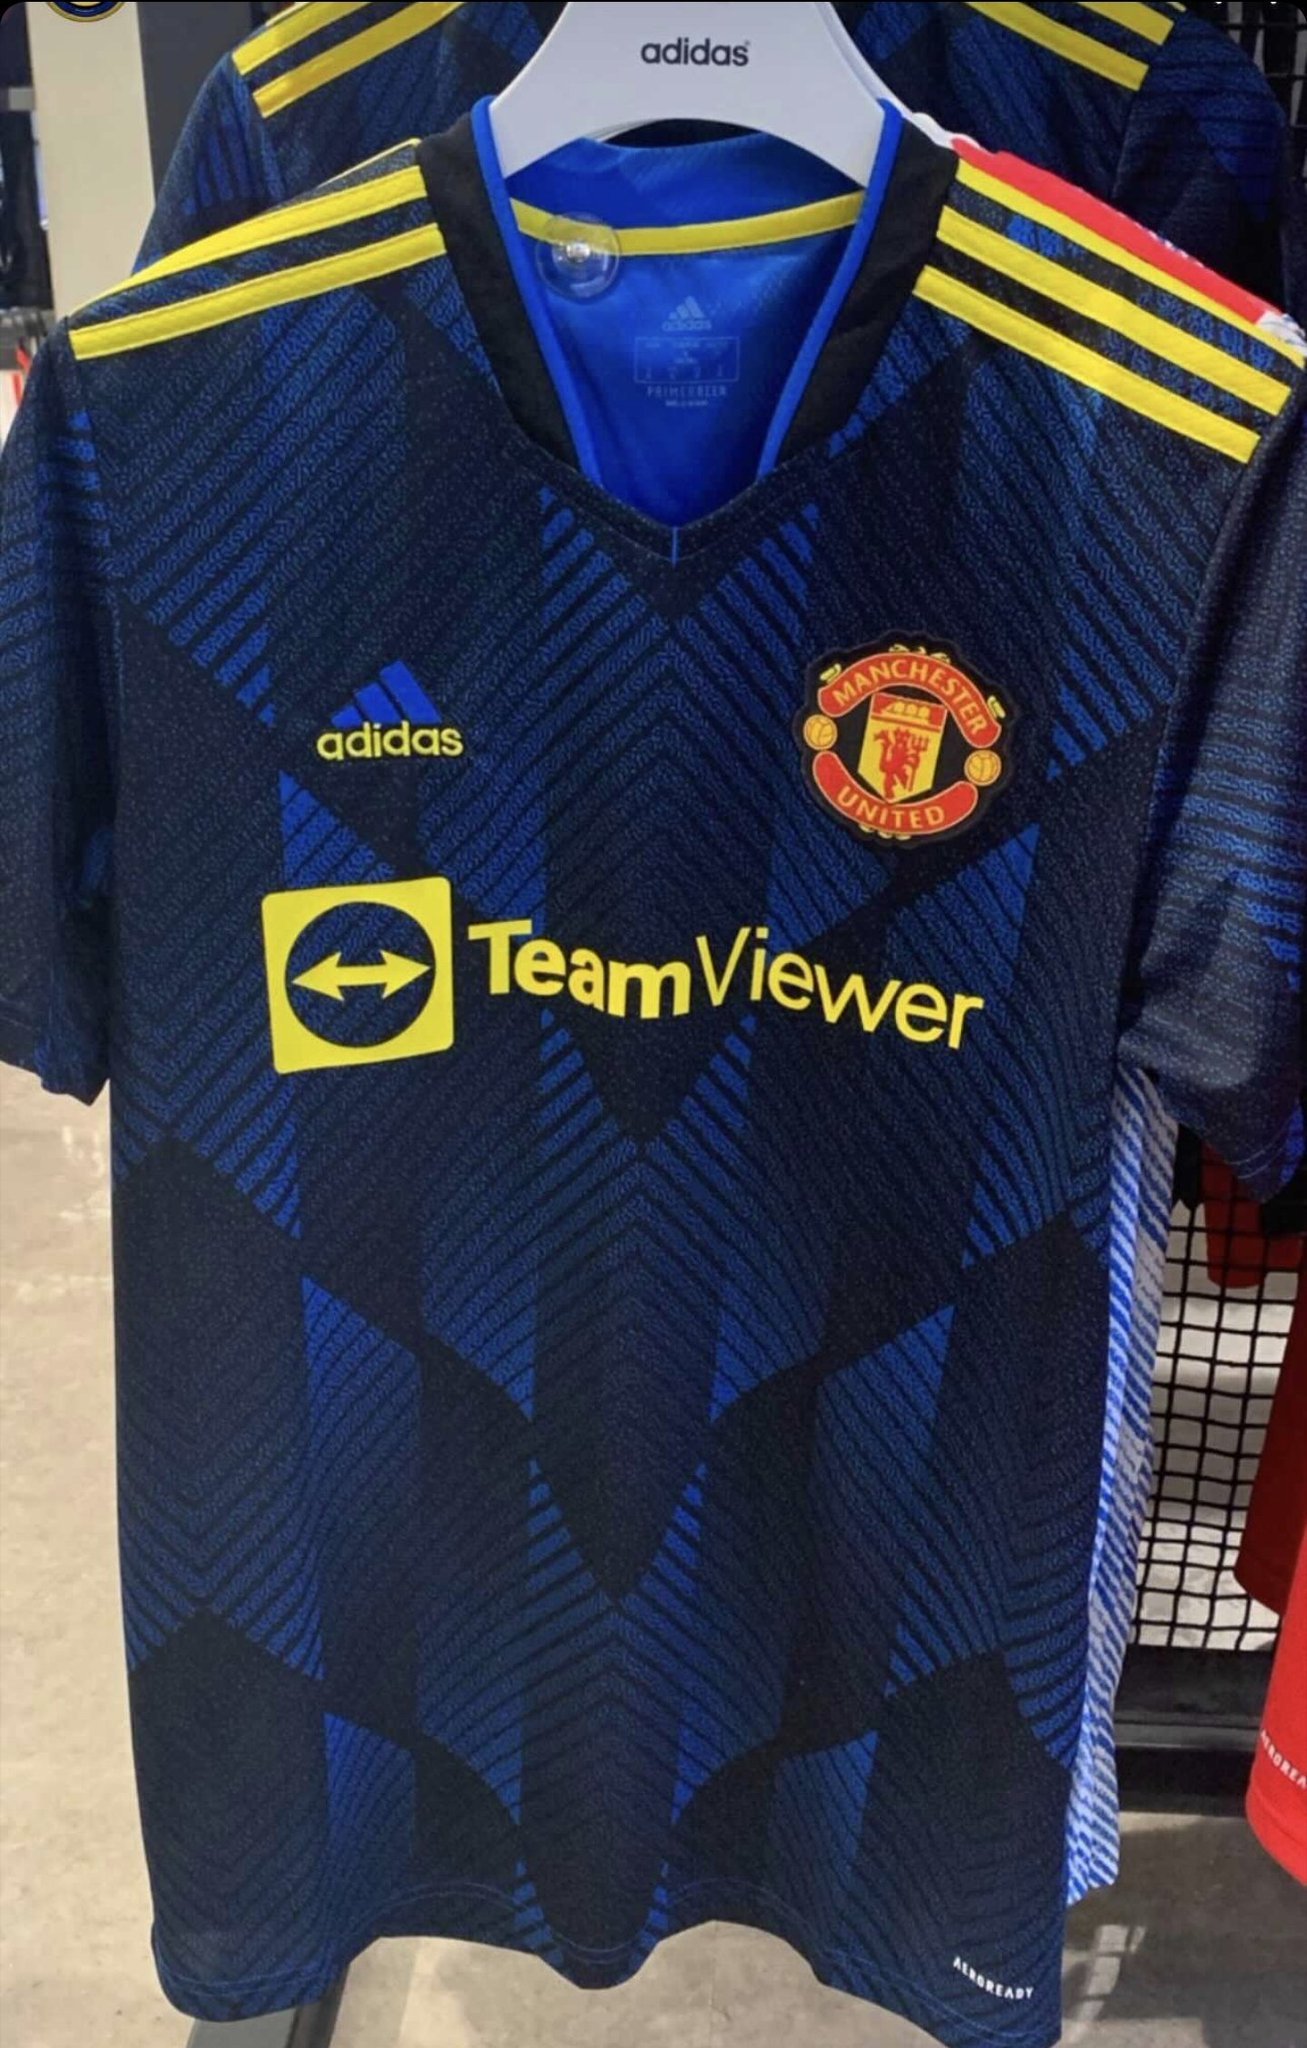 曼联新赛季第二客场球衣在一家商店出售感觉很违和